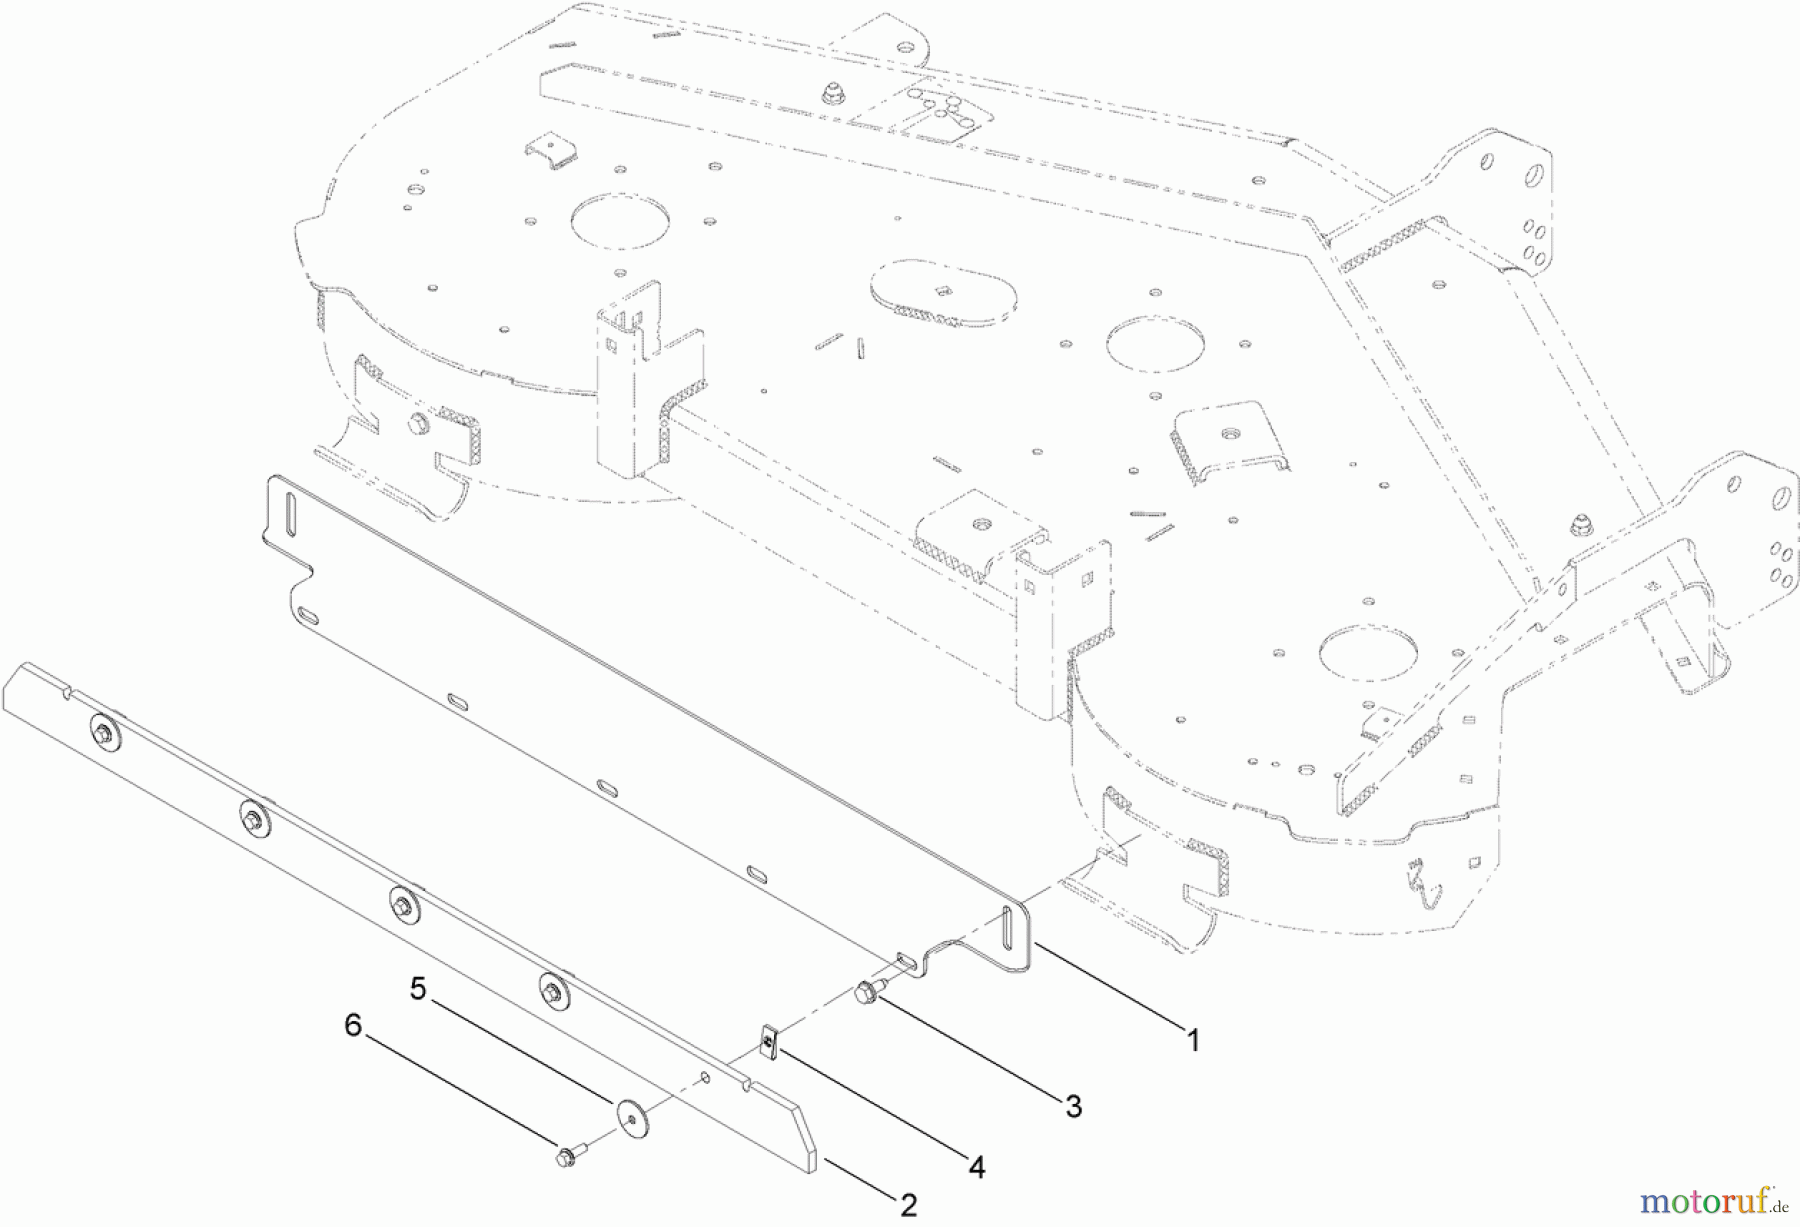  Toro Neu Accessories, Mower 121-5706 - Toro Striping Kit, Zero-Turn-Radius Riding Mower with 50